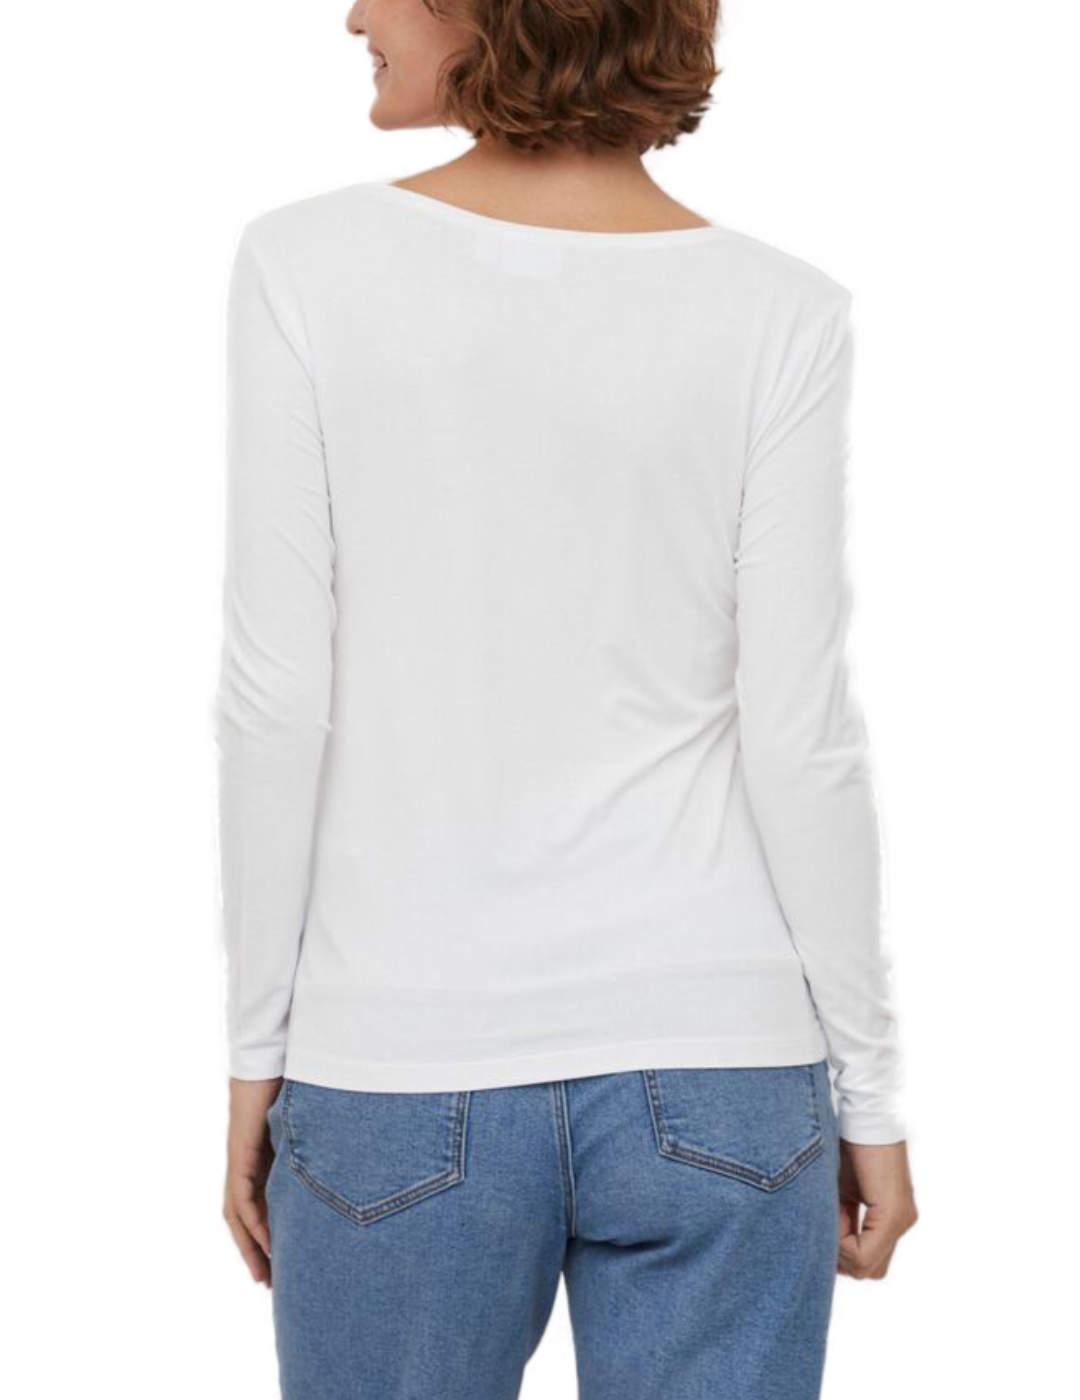 Camiseta Vila Daisy blanca manga larga de mujer-c